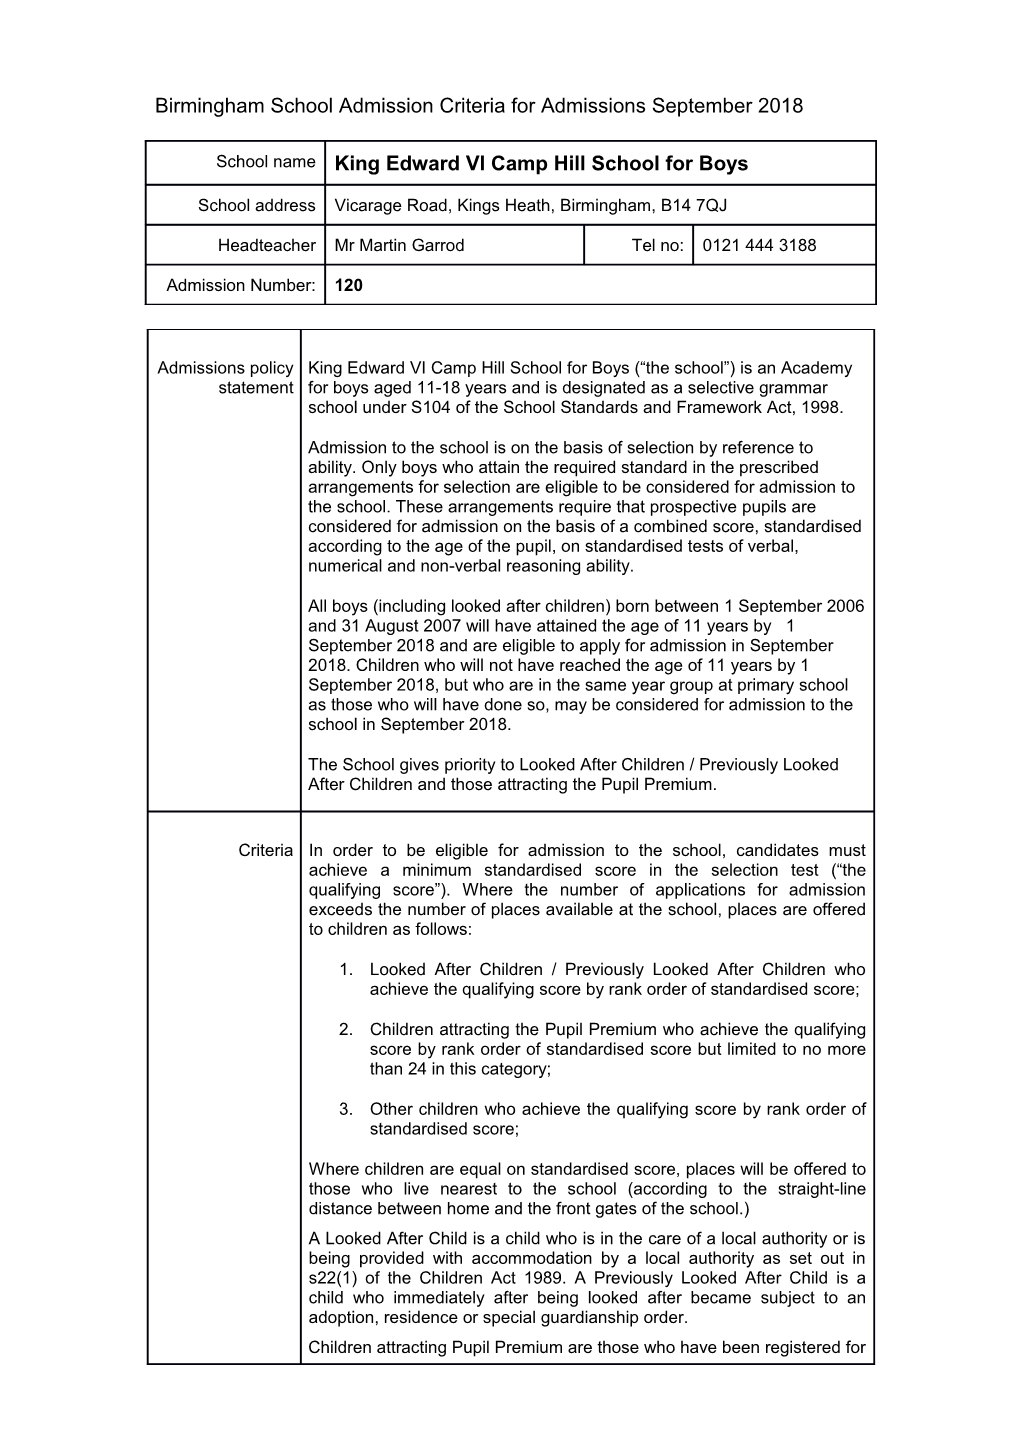 Birmingham School Admission Criteria September 2009